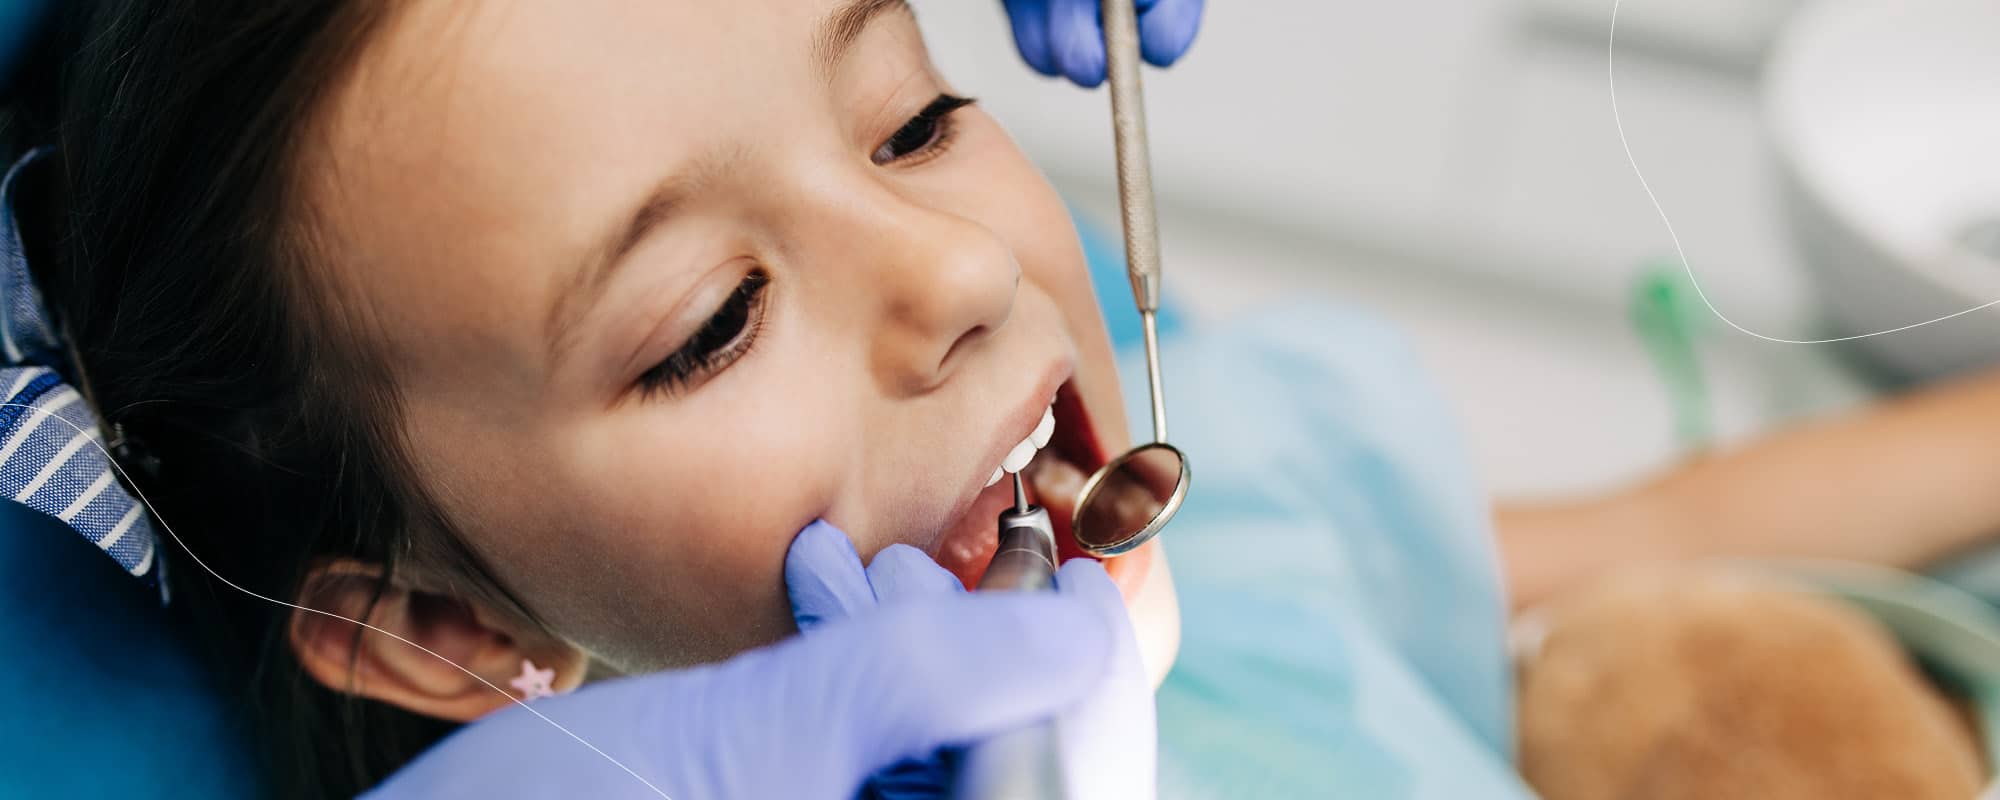 Malocclusioni dentali nei bambini: quali sono e come si curano i principali problemi ortodontici in età pediatrica?